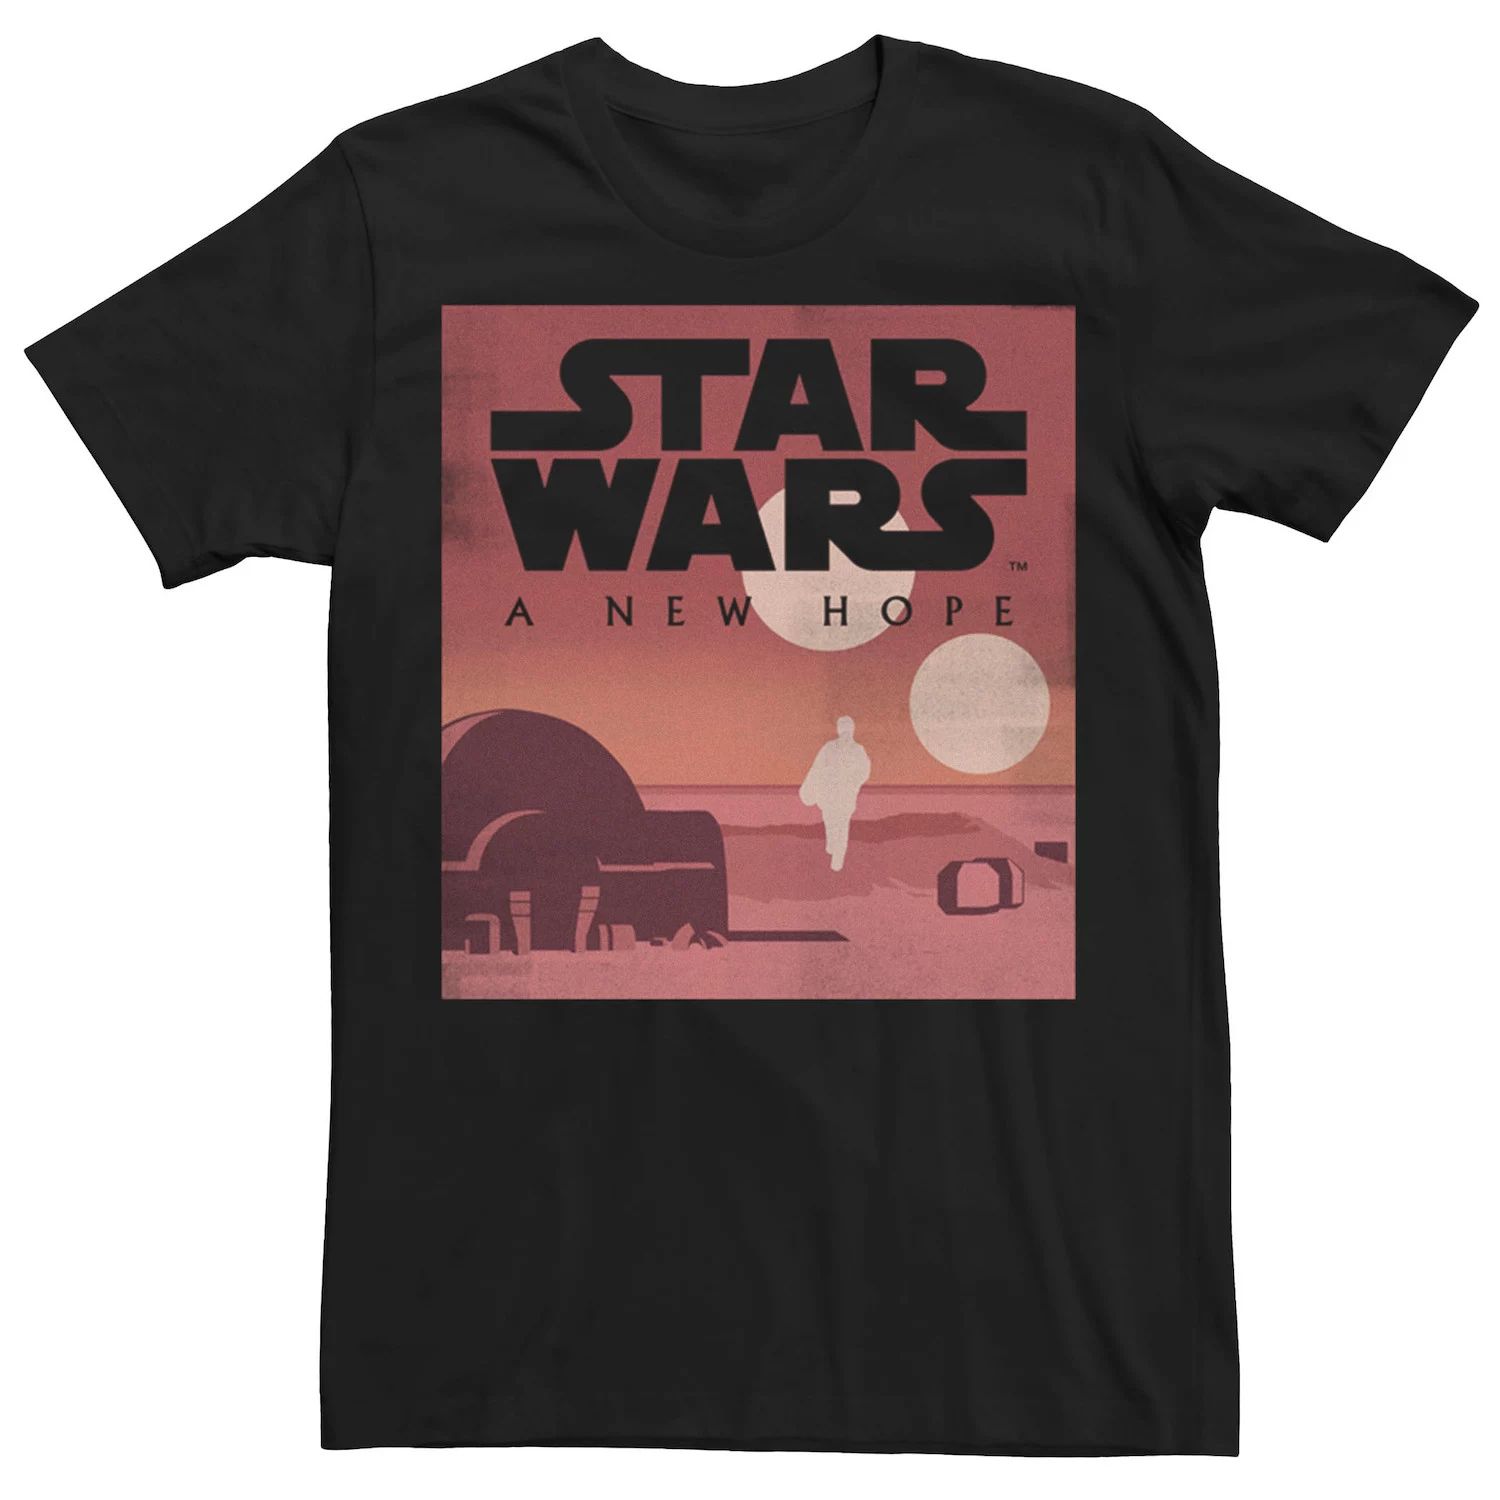 

Мужская минималистичная футболка New Hope Star Wars